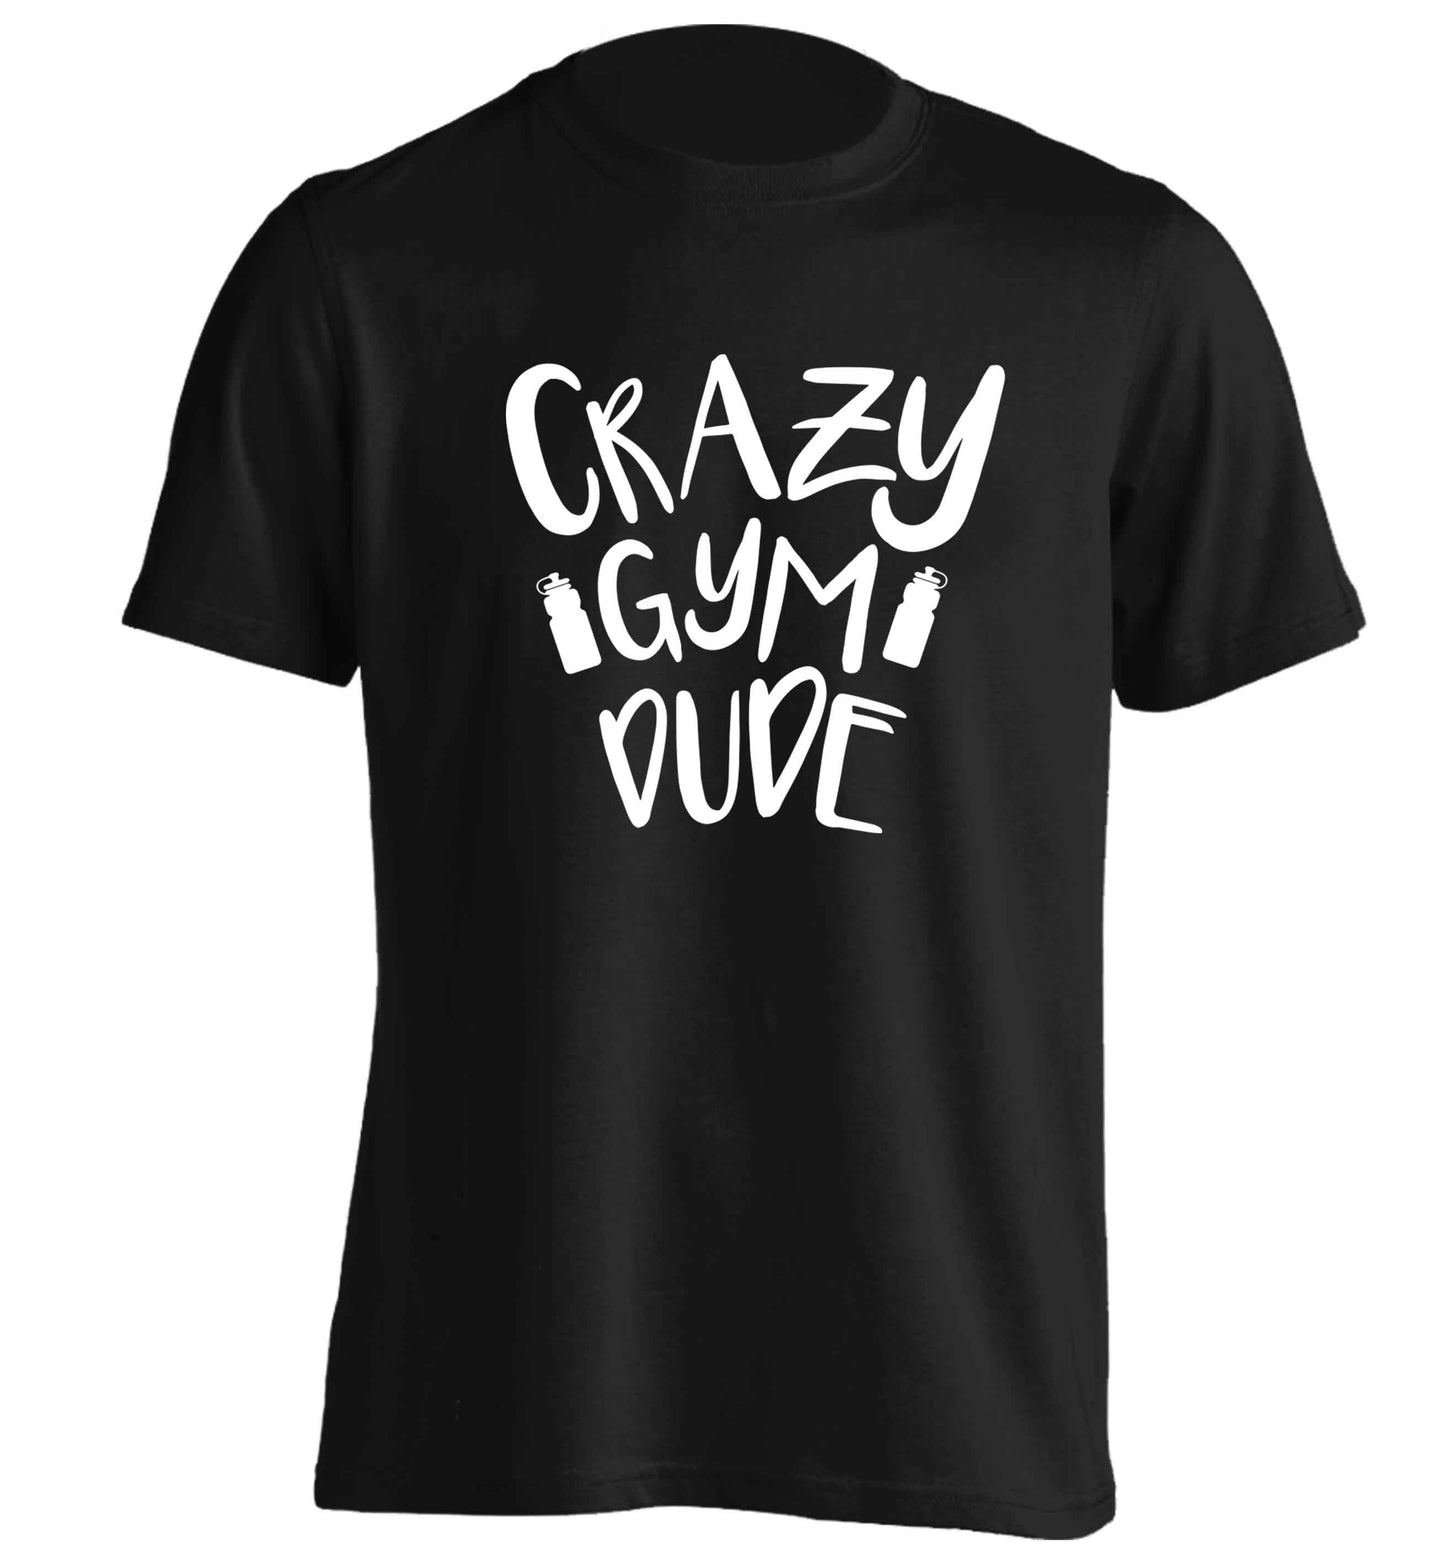 Crazy gym dude adults unisex black Tshirt 2XL